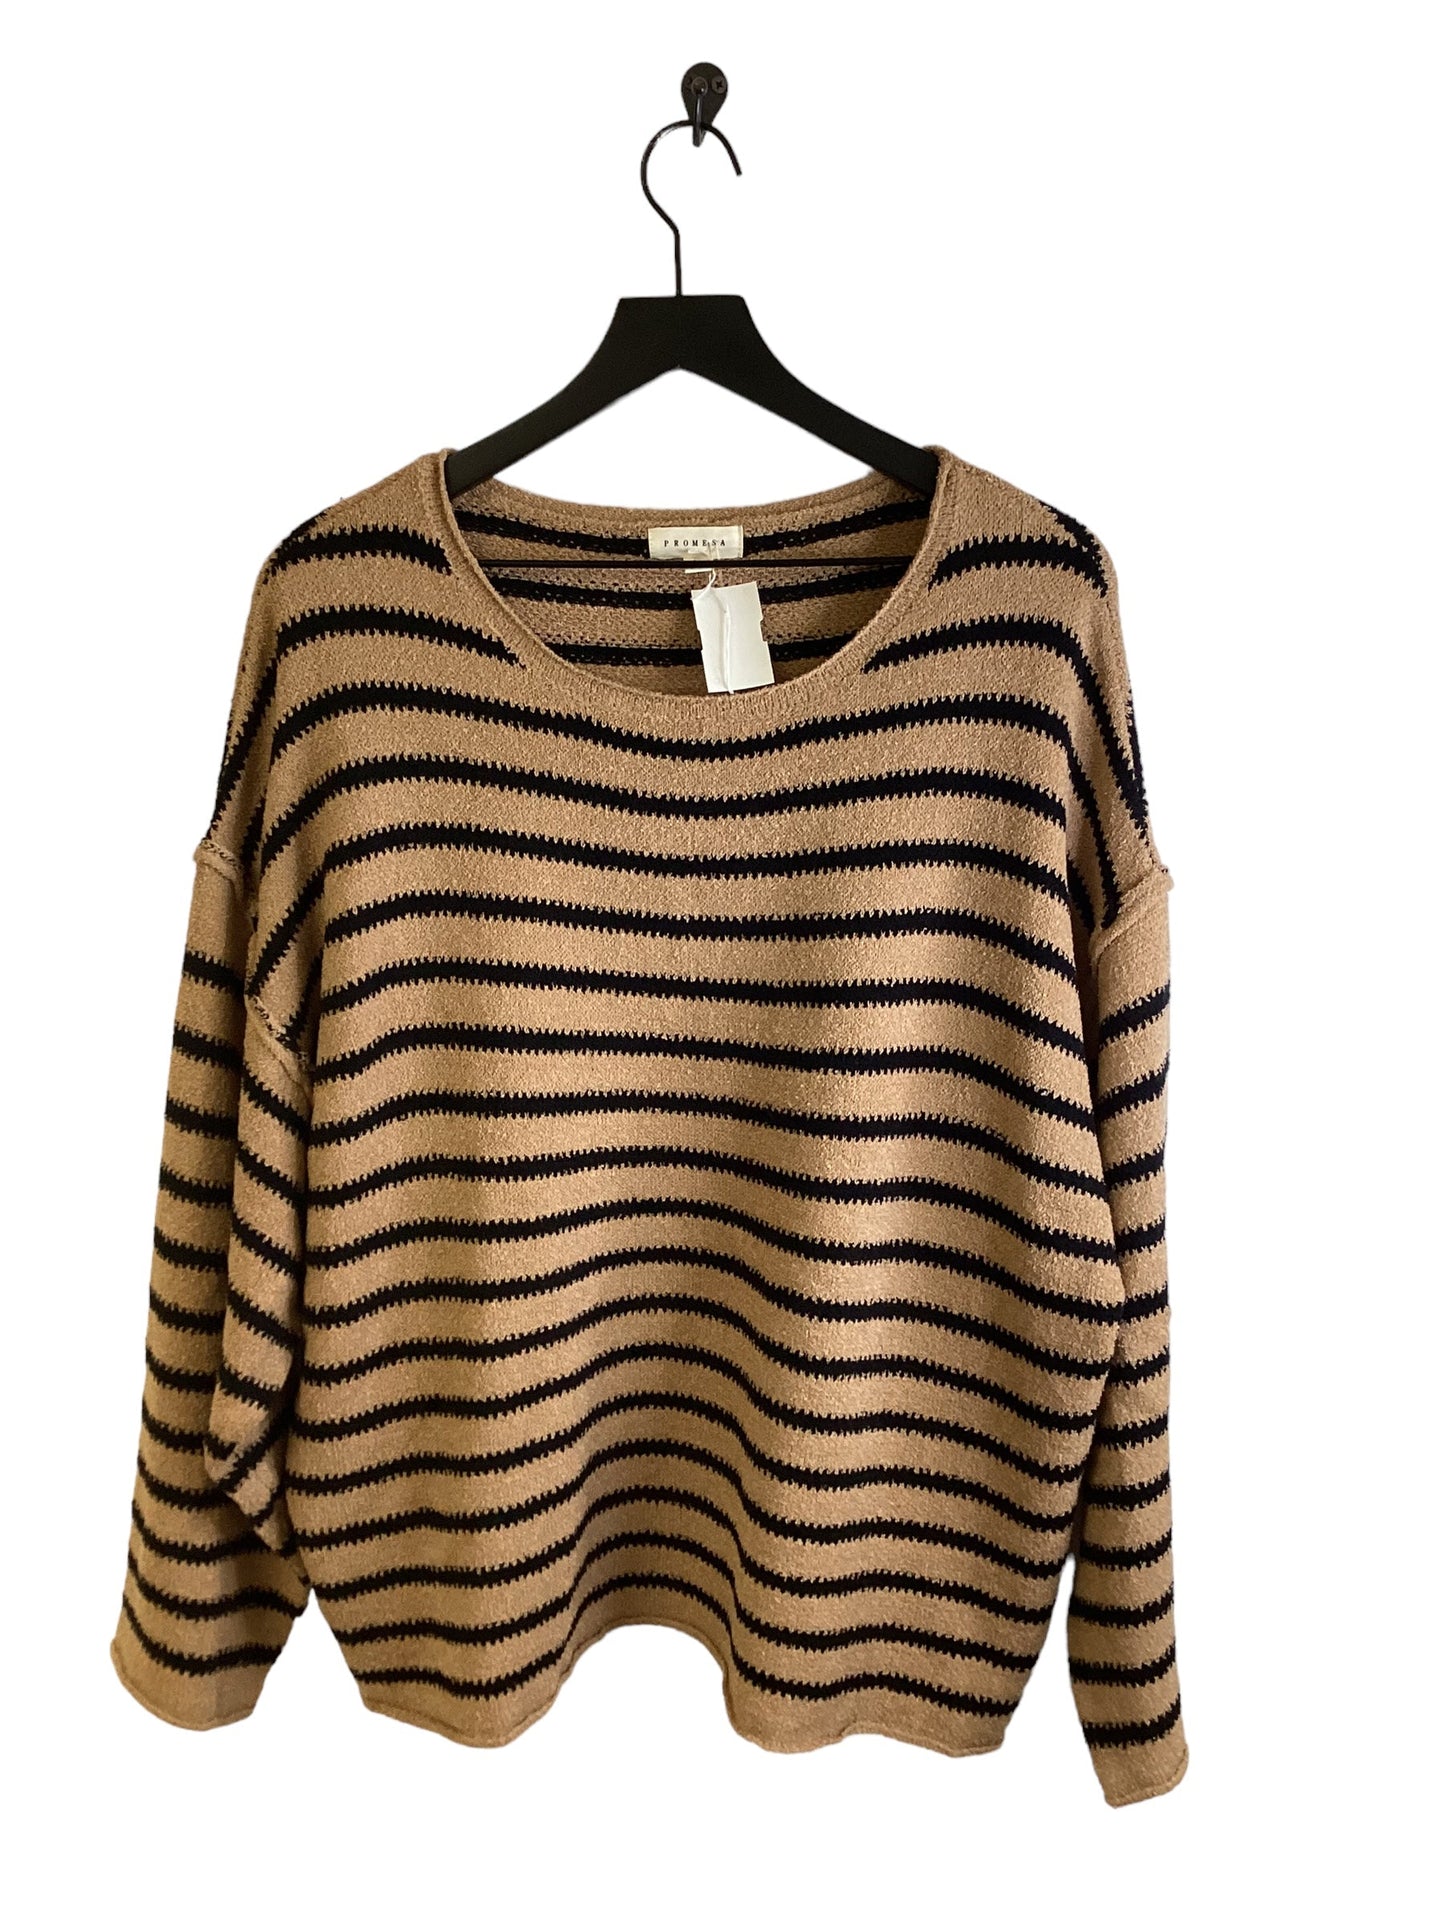 Sweater By Promesa  Size: M